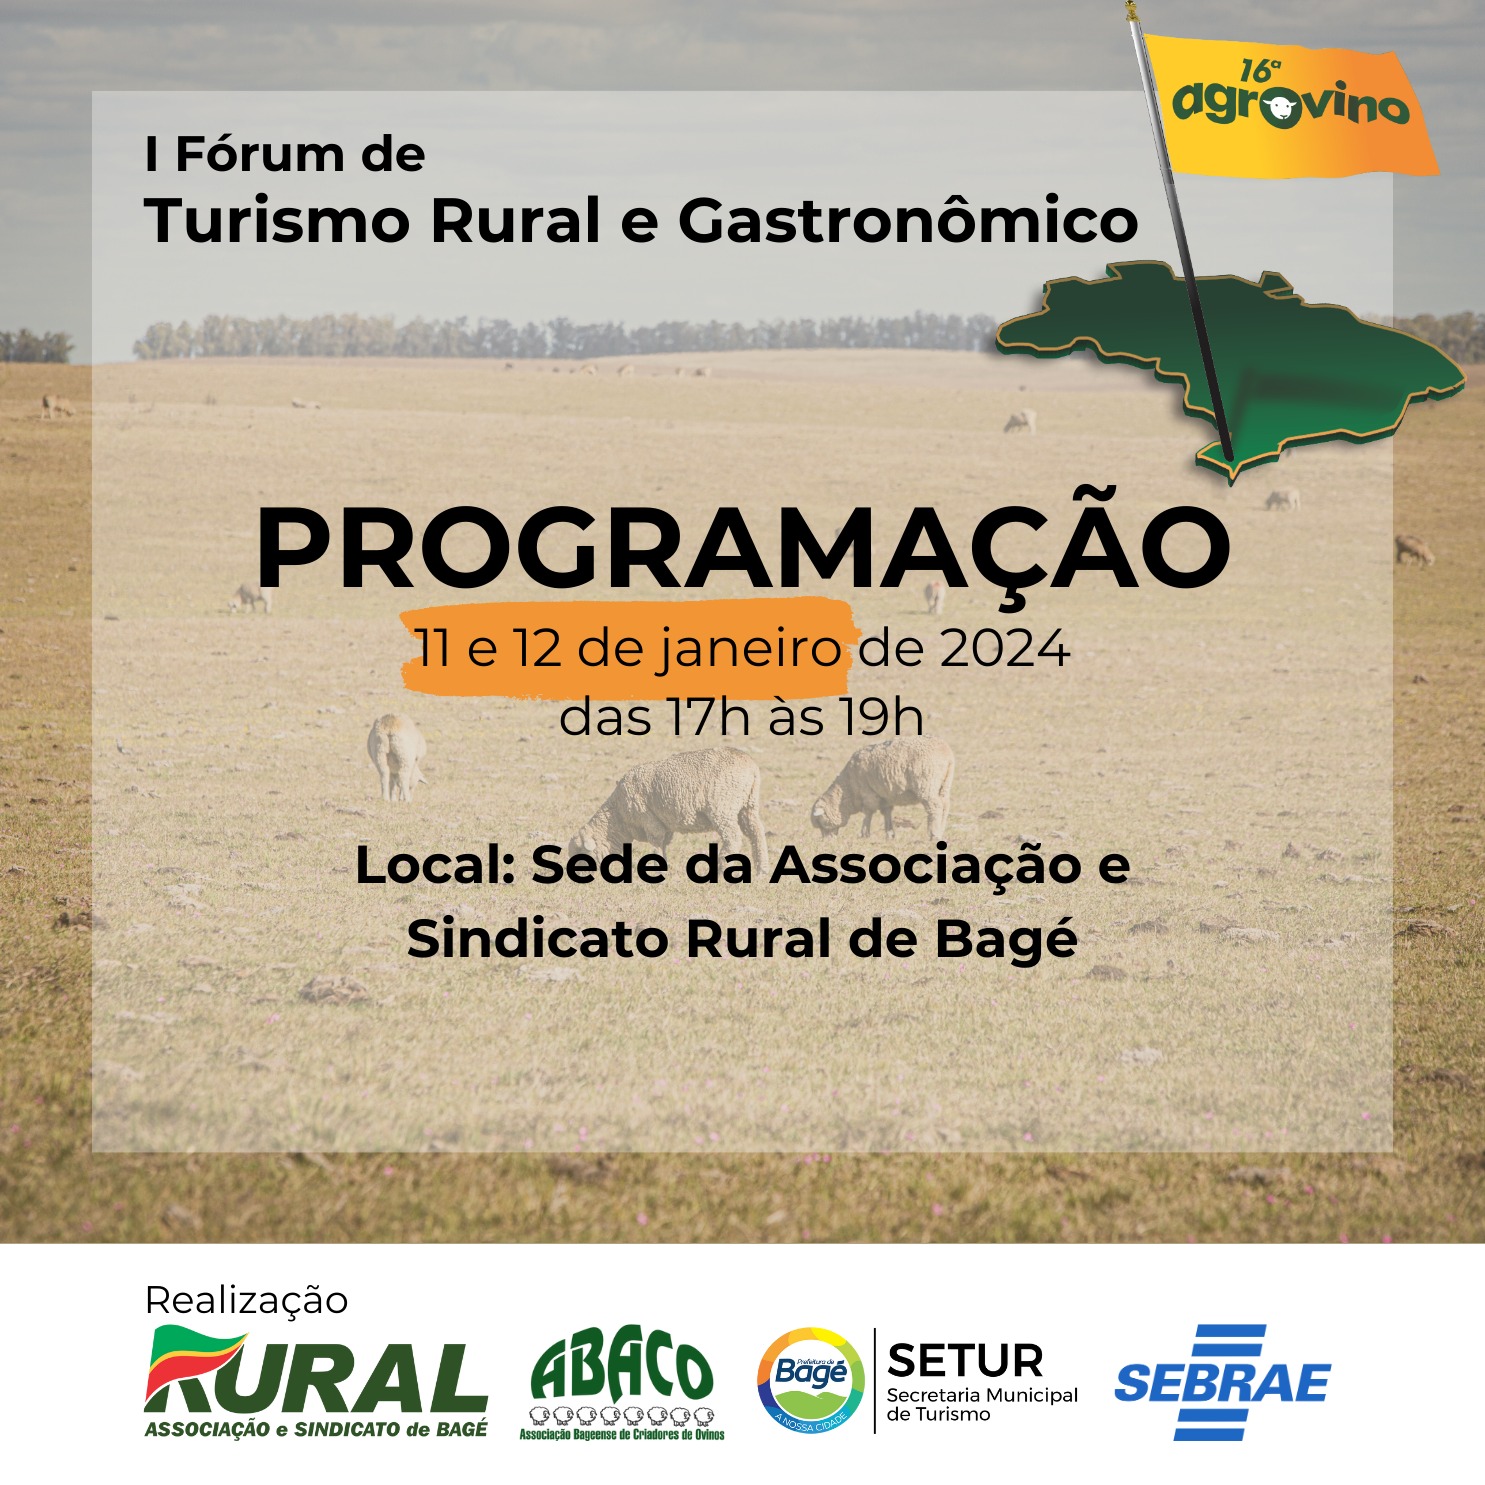 Primeiro fórum de turismo rural e gastronômico ocorrerá em Bagé durante Agrovino